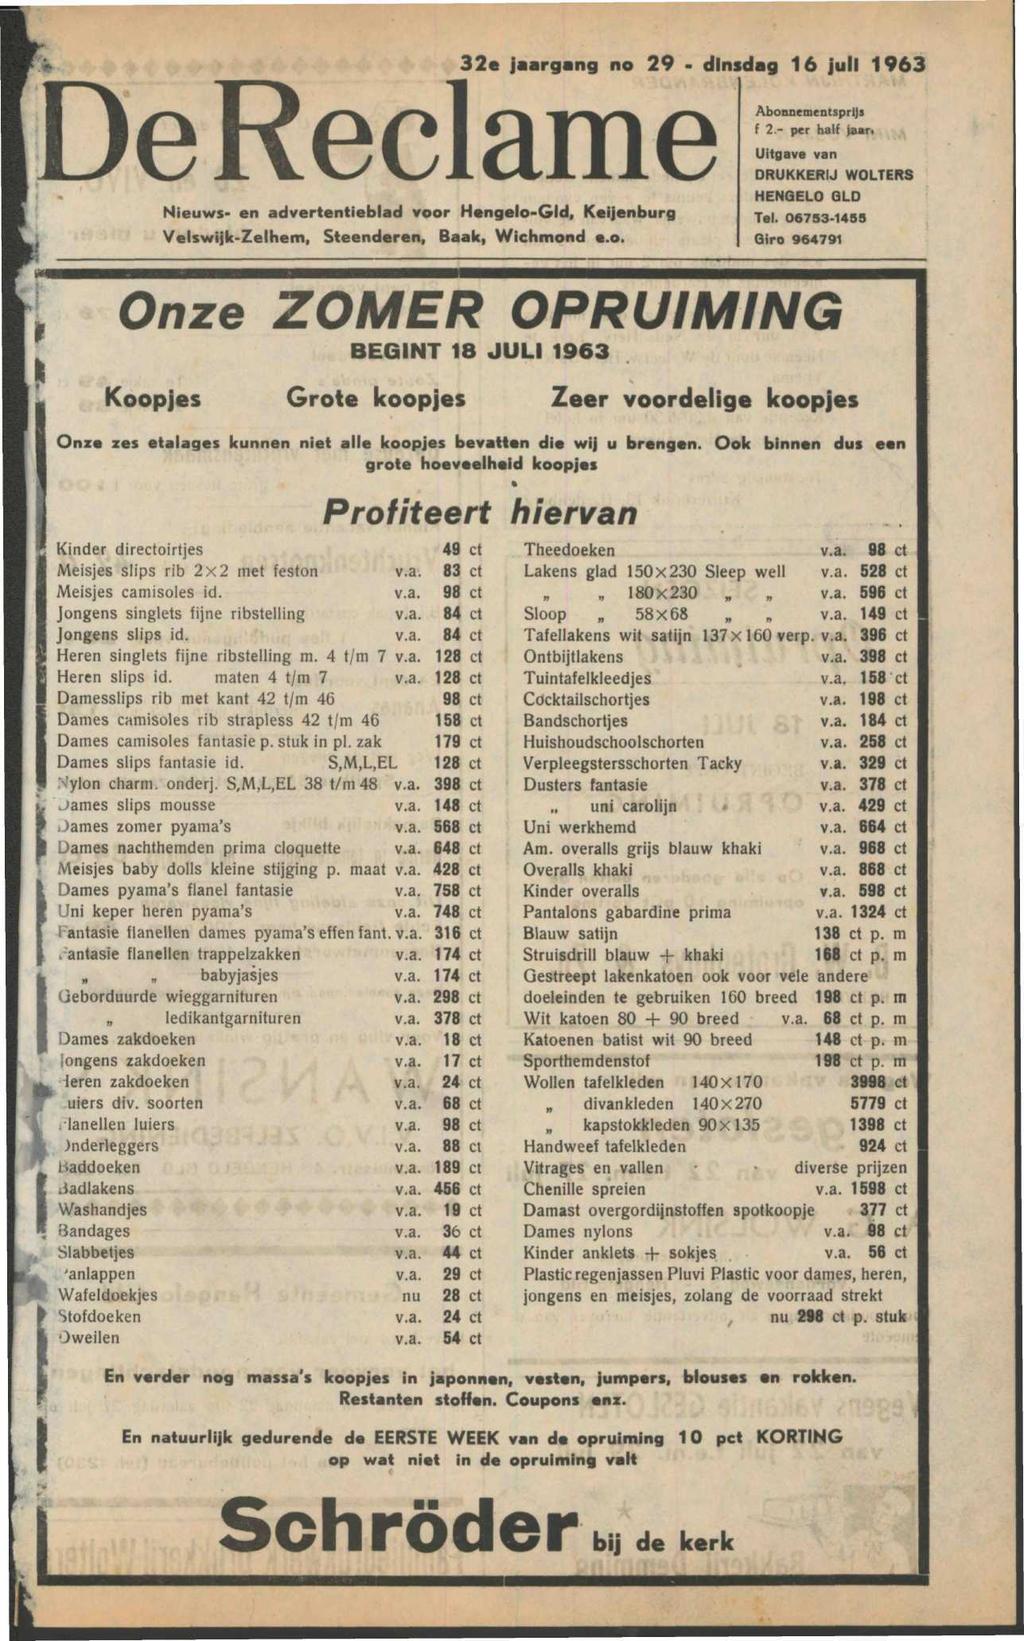 De Reclame Nieuws- en advertentieblad voor Hengelo-Gld, Keijenburg Velswijlc-Zelhem, Steenderen, Baak, Wichmond e.o. 32e jaargang no 29 dinsdag 16 juli 1963 Abonnementsprijs f 2.